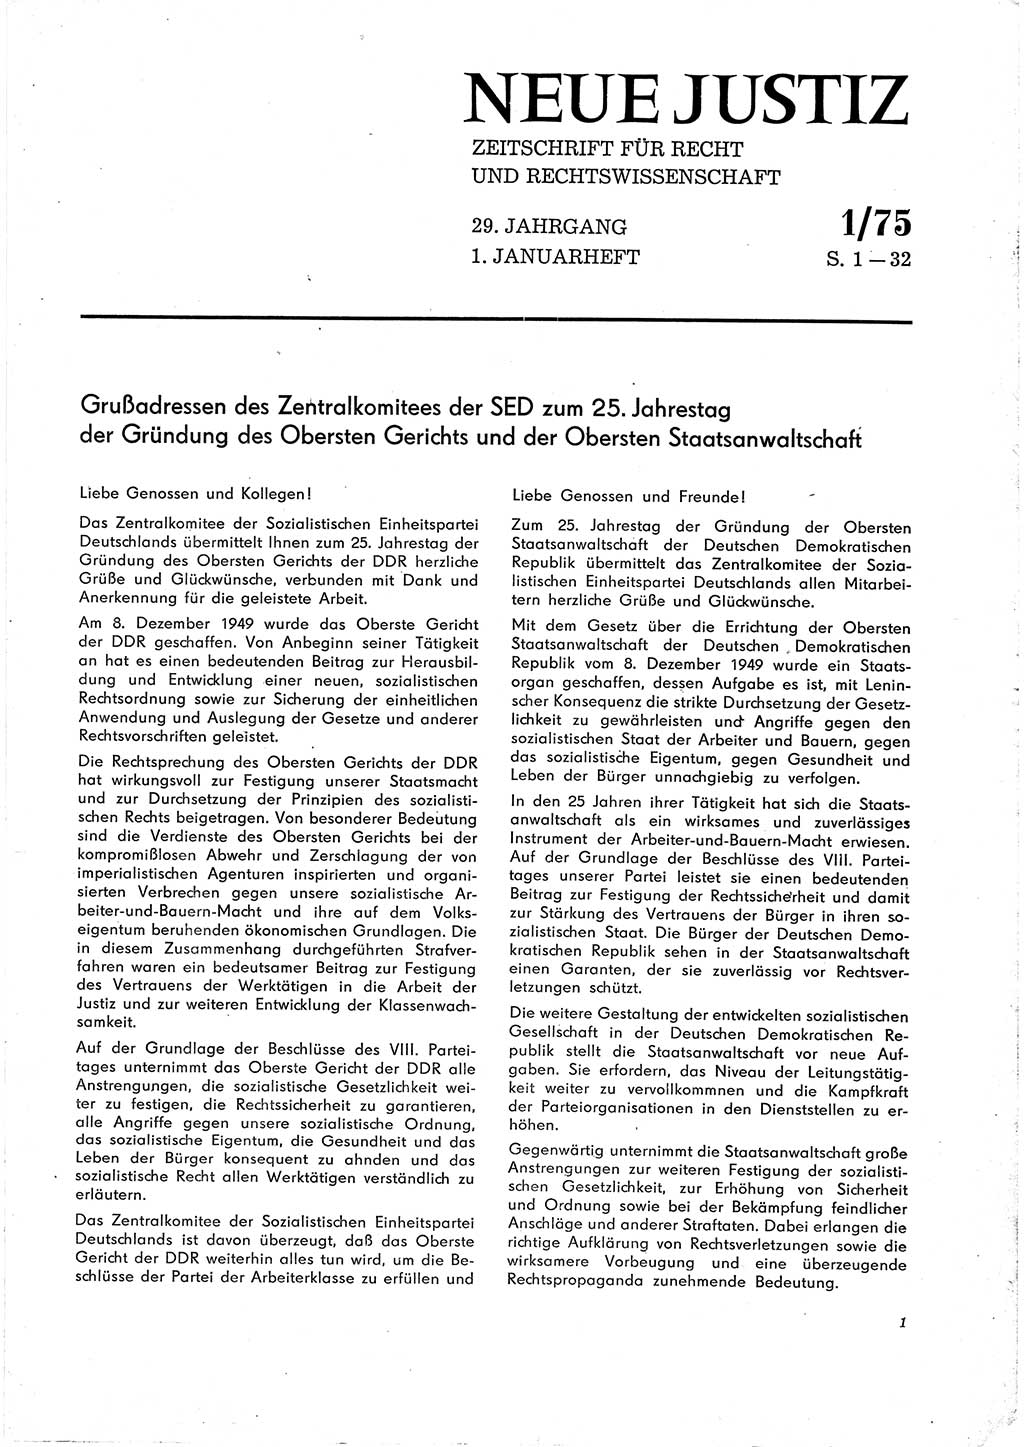 Neue Justiz (NJ), Zeitschrift für Recht und Rechtswissenschaft [Deutsche Demokratische Republik (DDR)], 29. Jahrgang 1975, Seite 1 (NJ DDR 1975, S. 1)